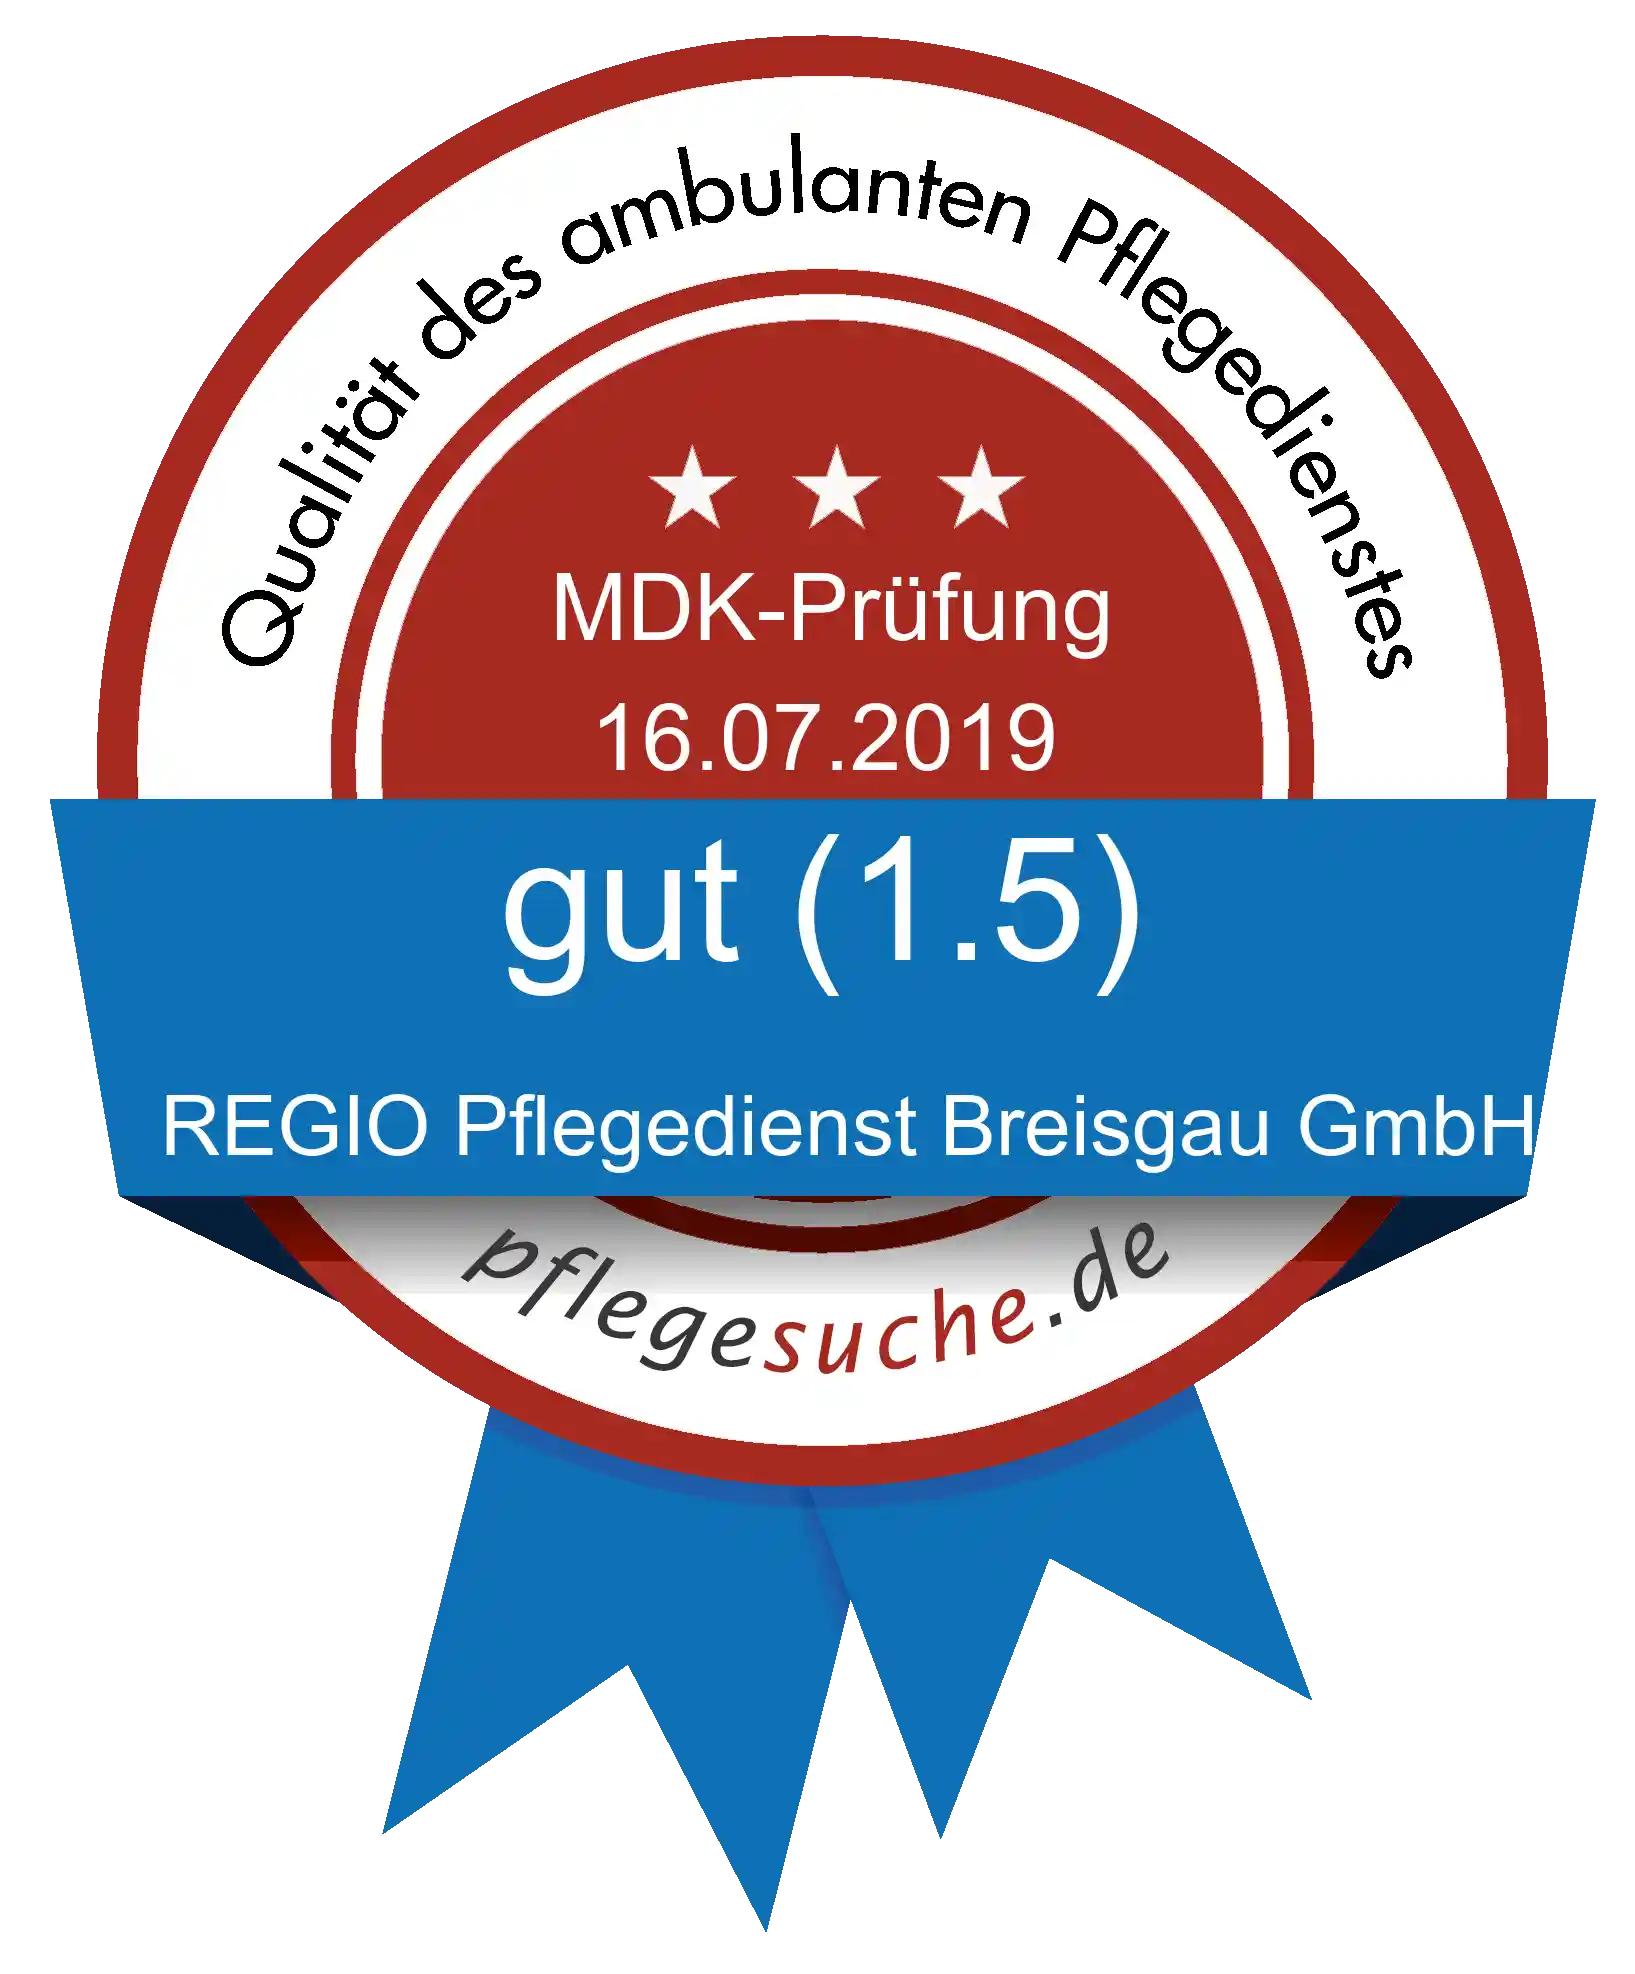 Siegel Benotung: REGIO Pflegedienst Breisgau GmbH